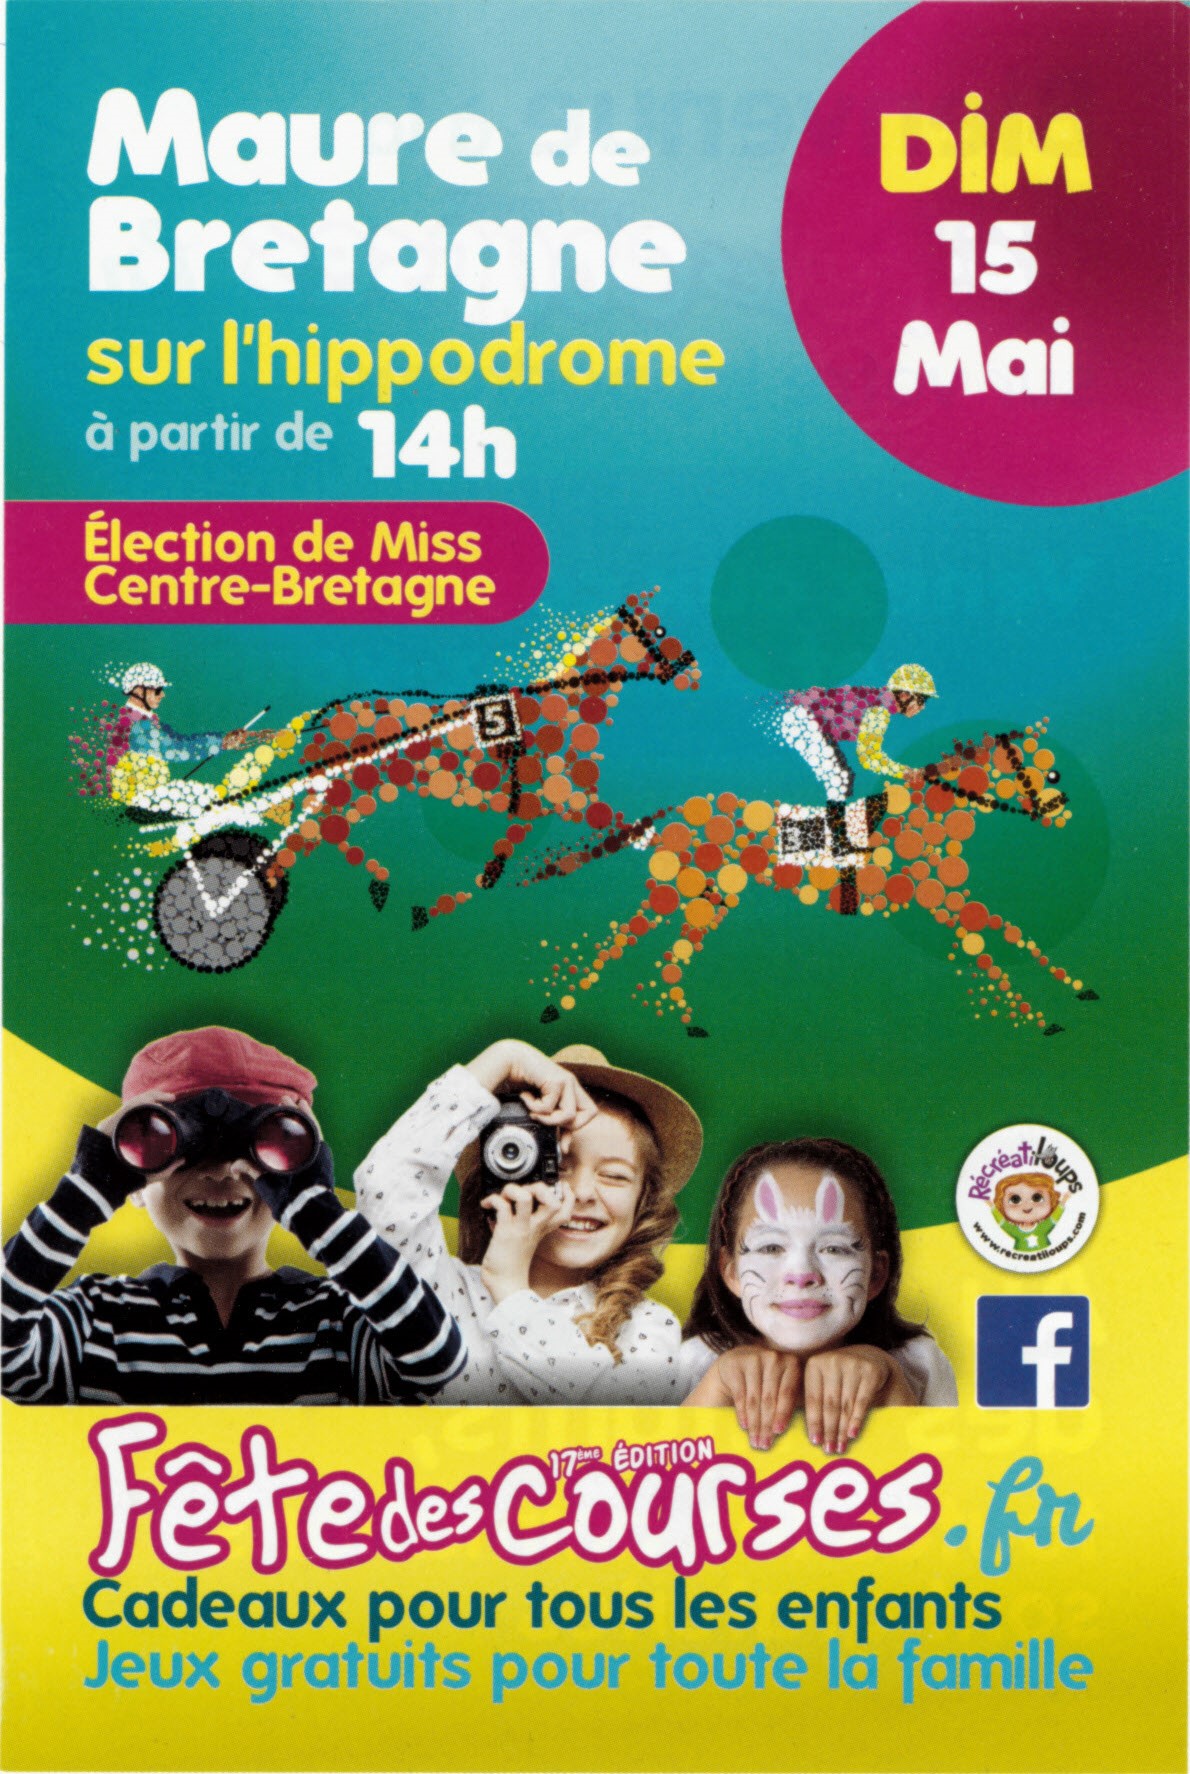 Fête des courses sur l'hippodrome de Maure de Bretagne